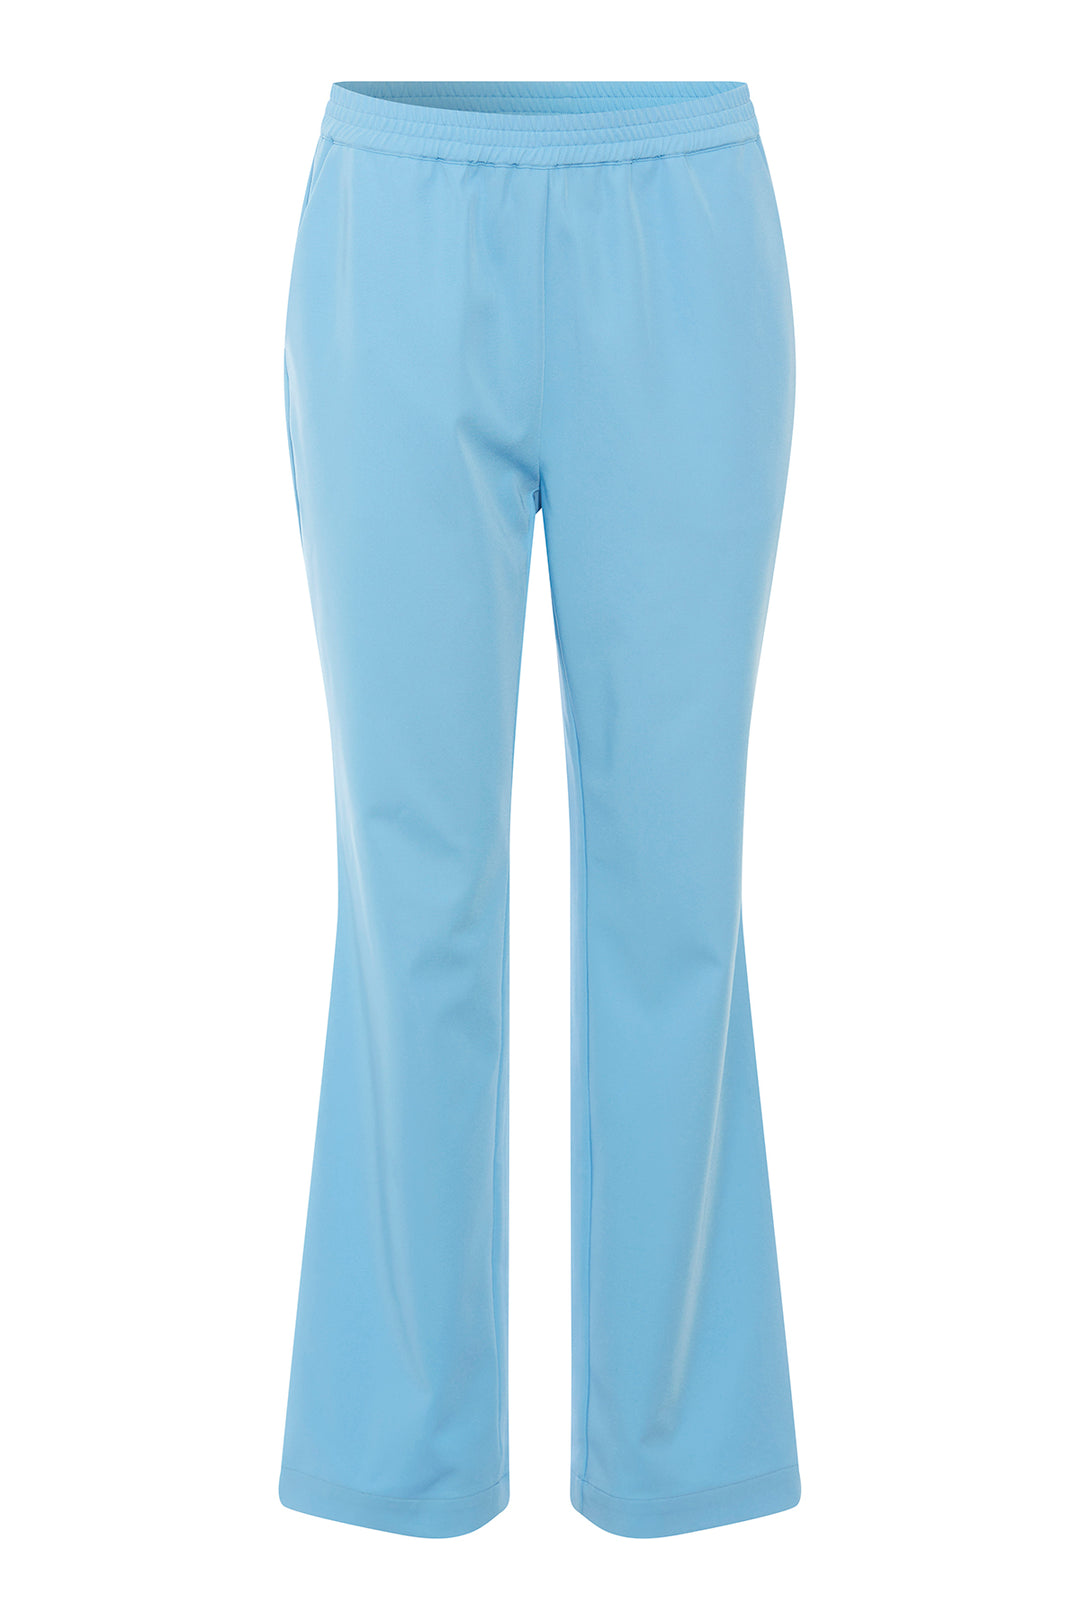 PBO Amalie bukser TROUSERS 297 Bonnie blue